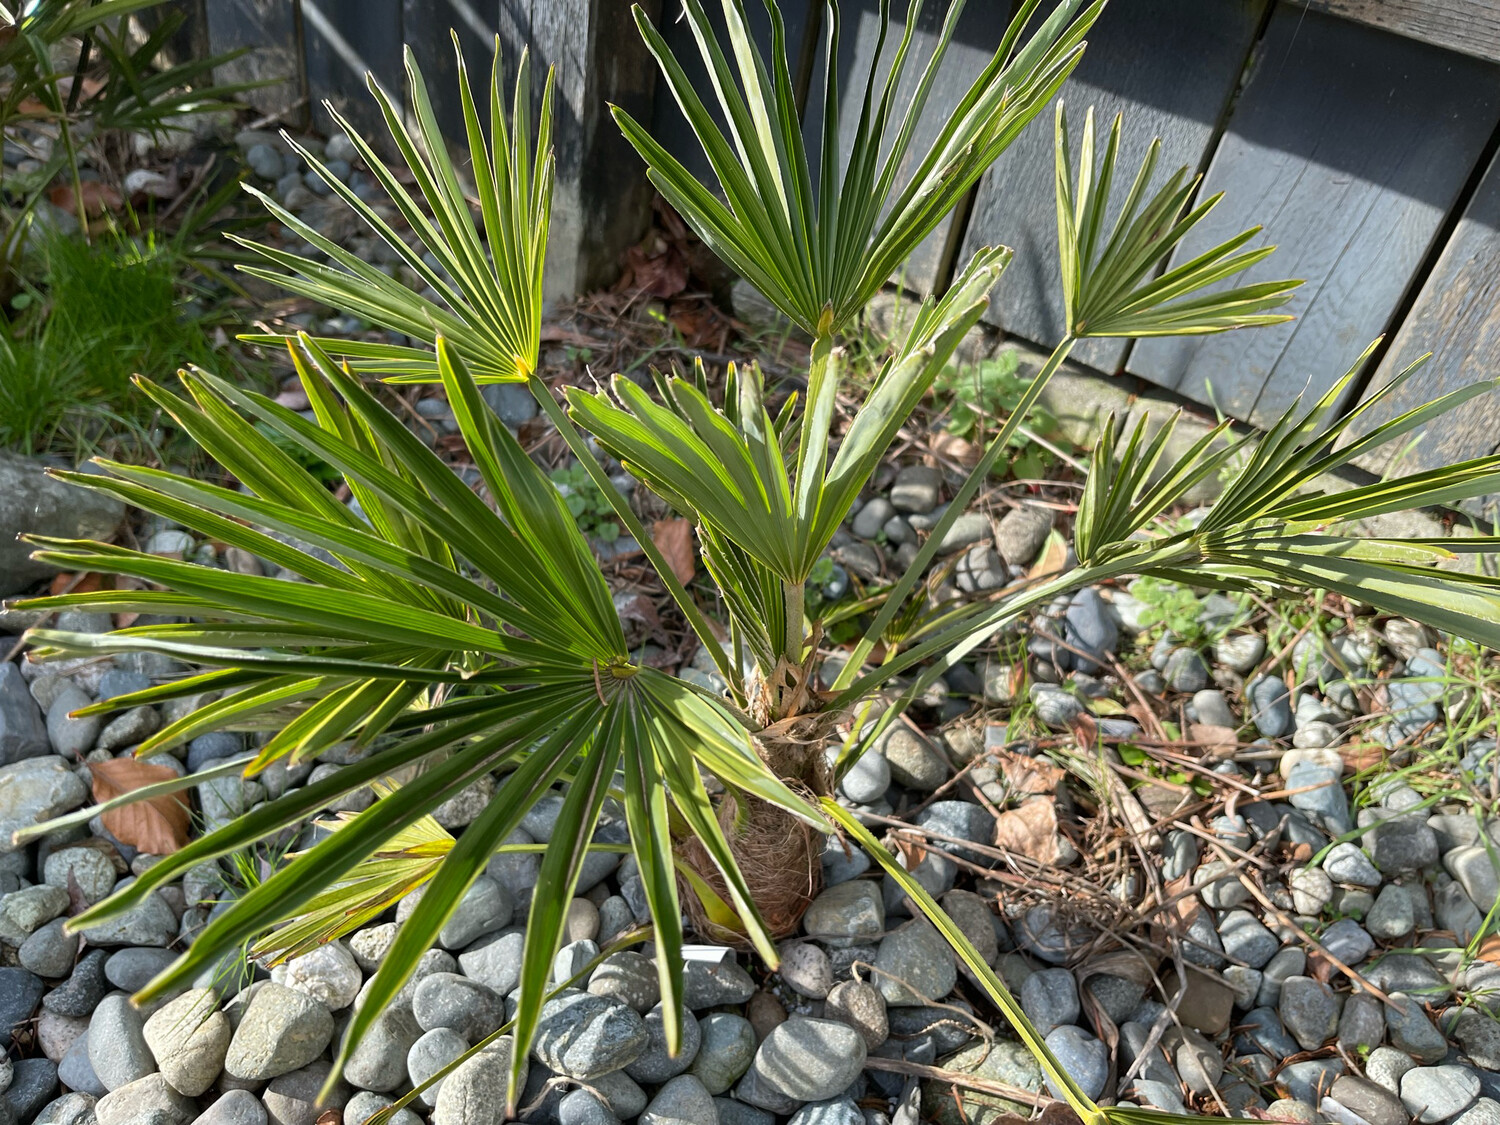 Trachycarpus wagnerianus, "Waggie Palm"